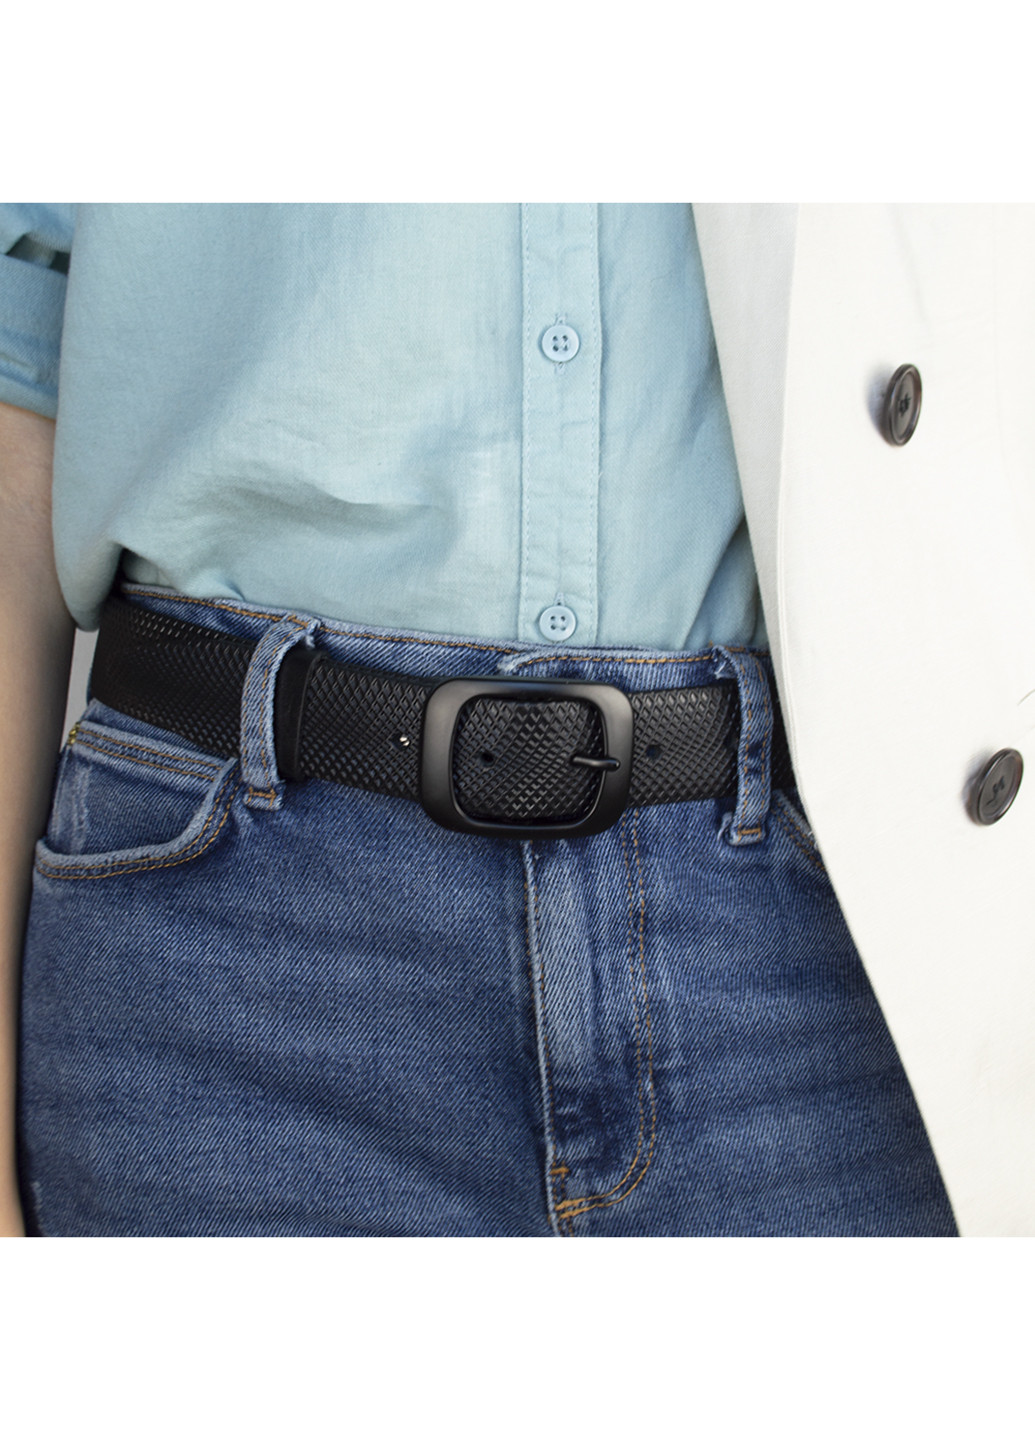 Ремень женский кожаный под джинсы черный -3547 (120 см) JK (249595905)